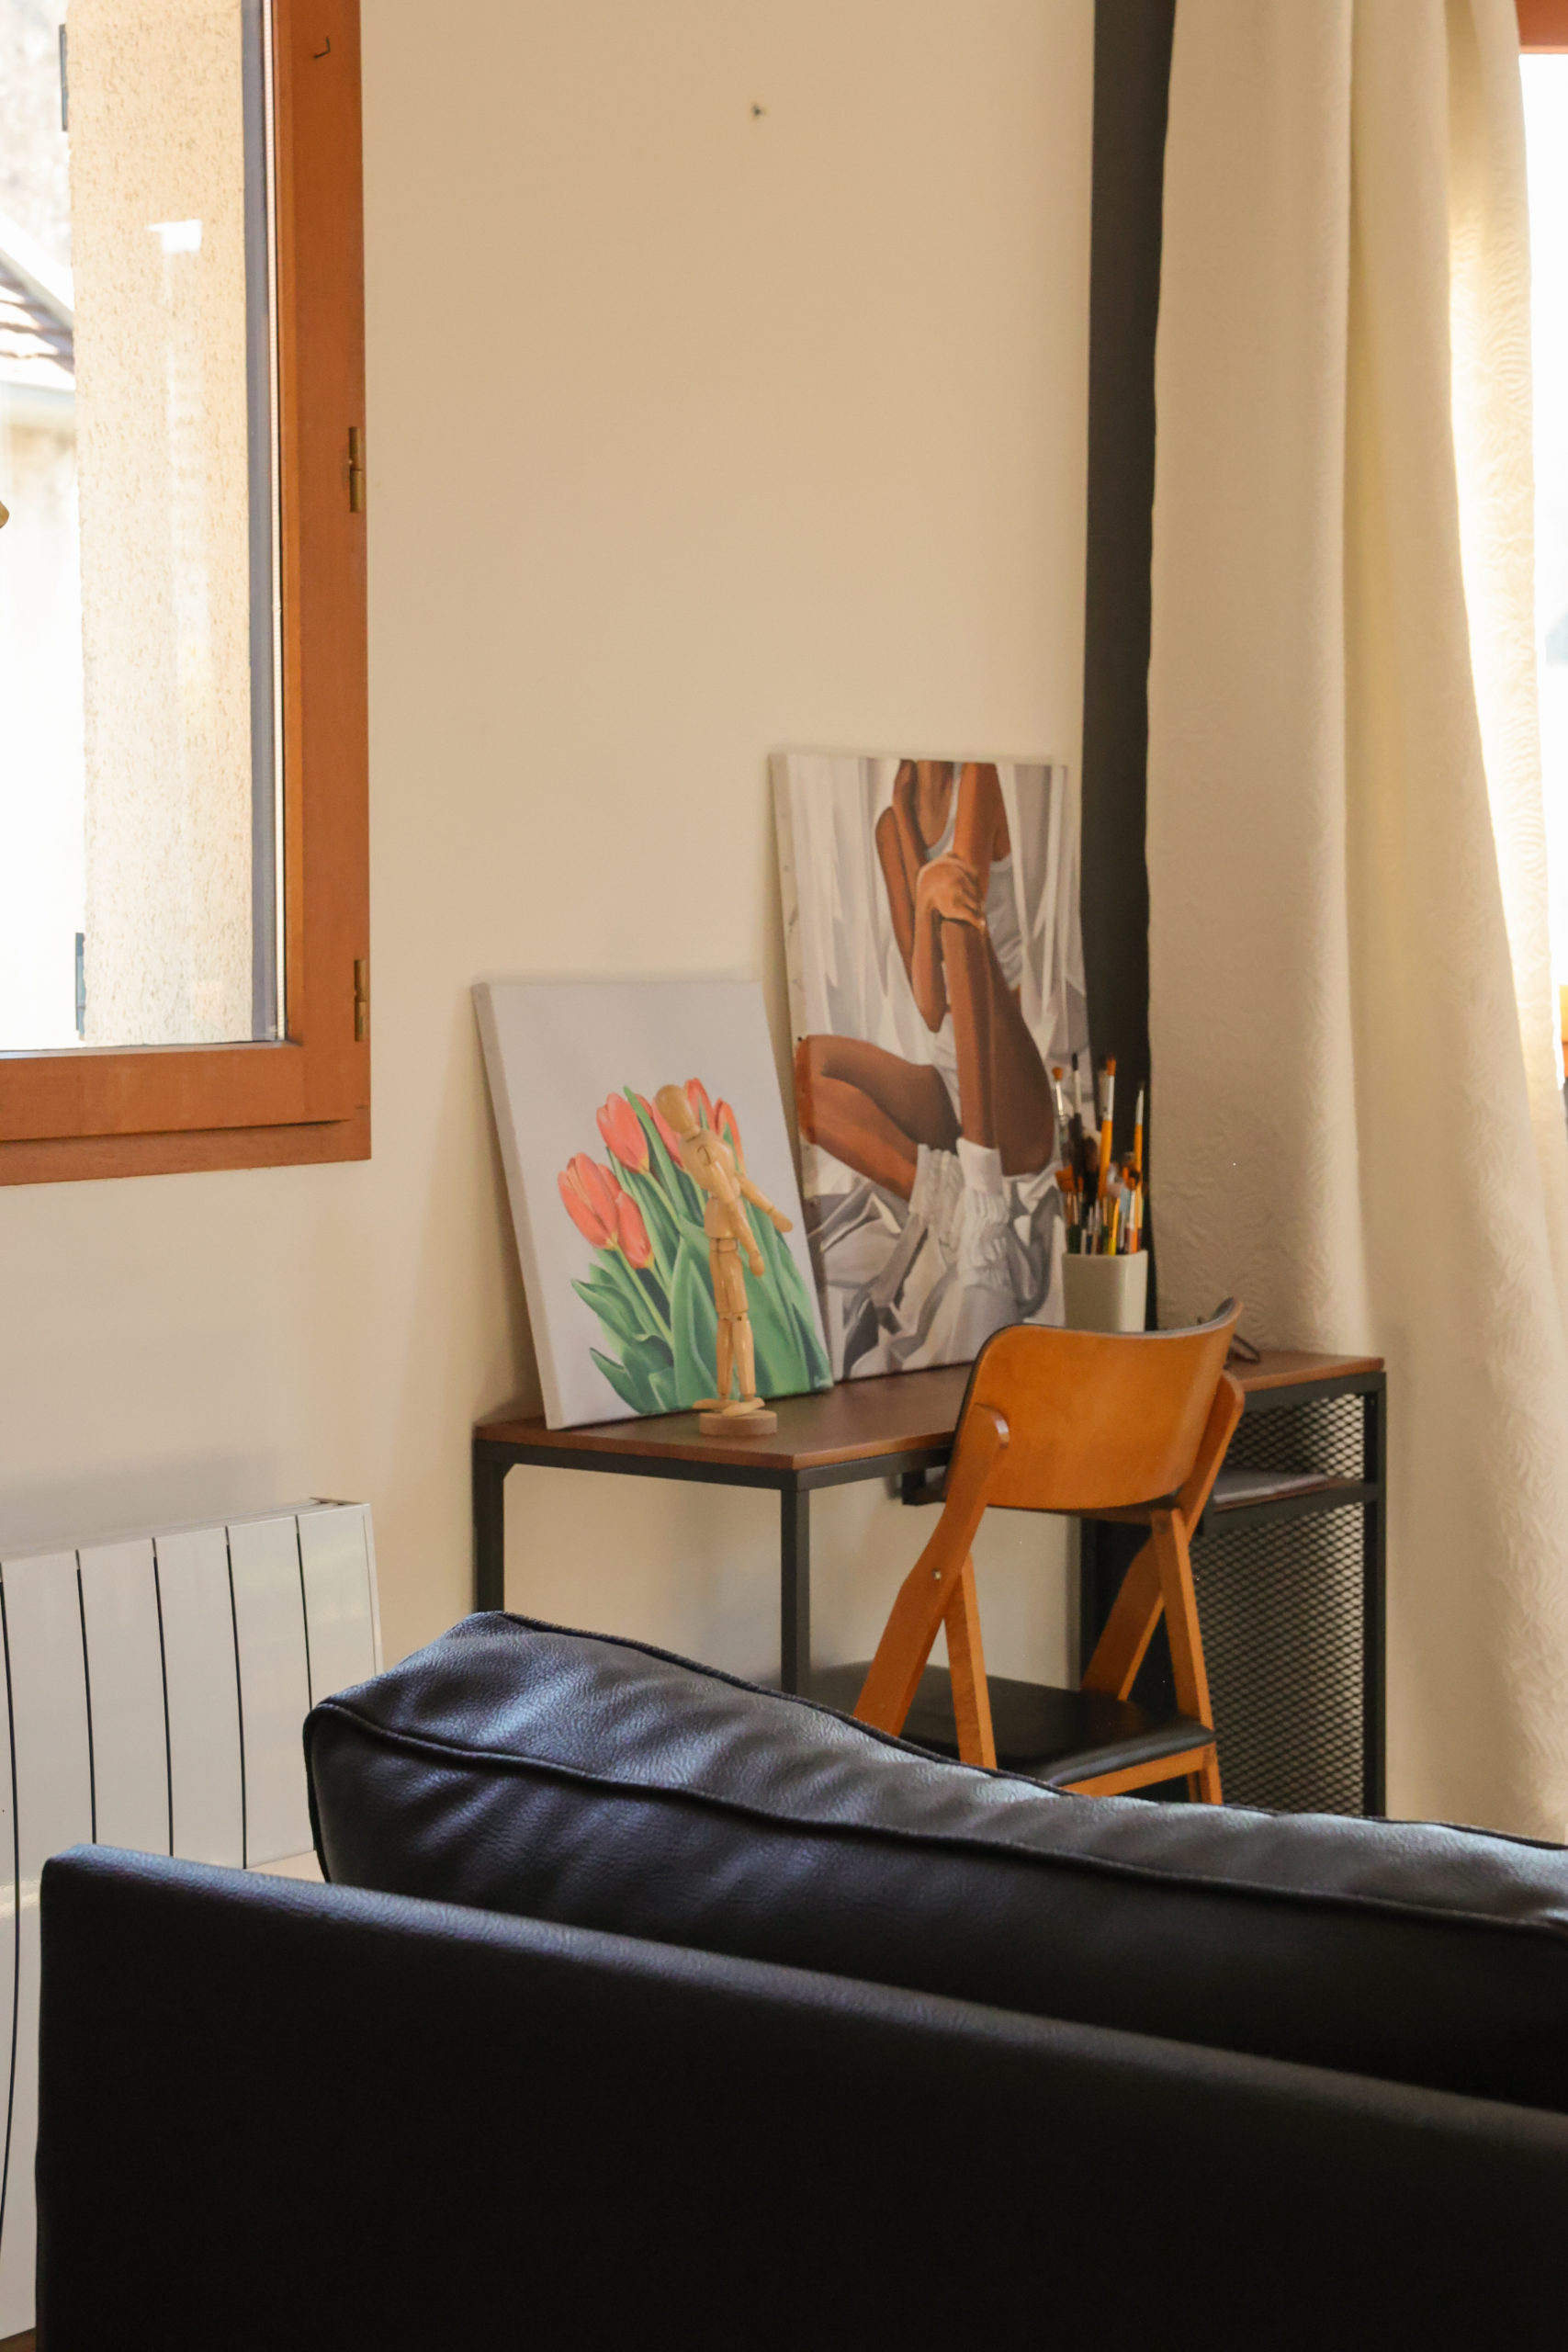 2 peintures de Morgane Clavaud sont posées sur son bureau dans son salon